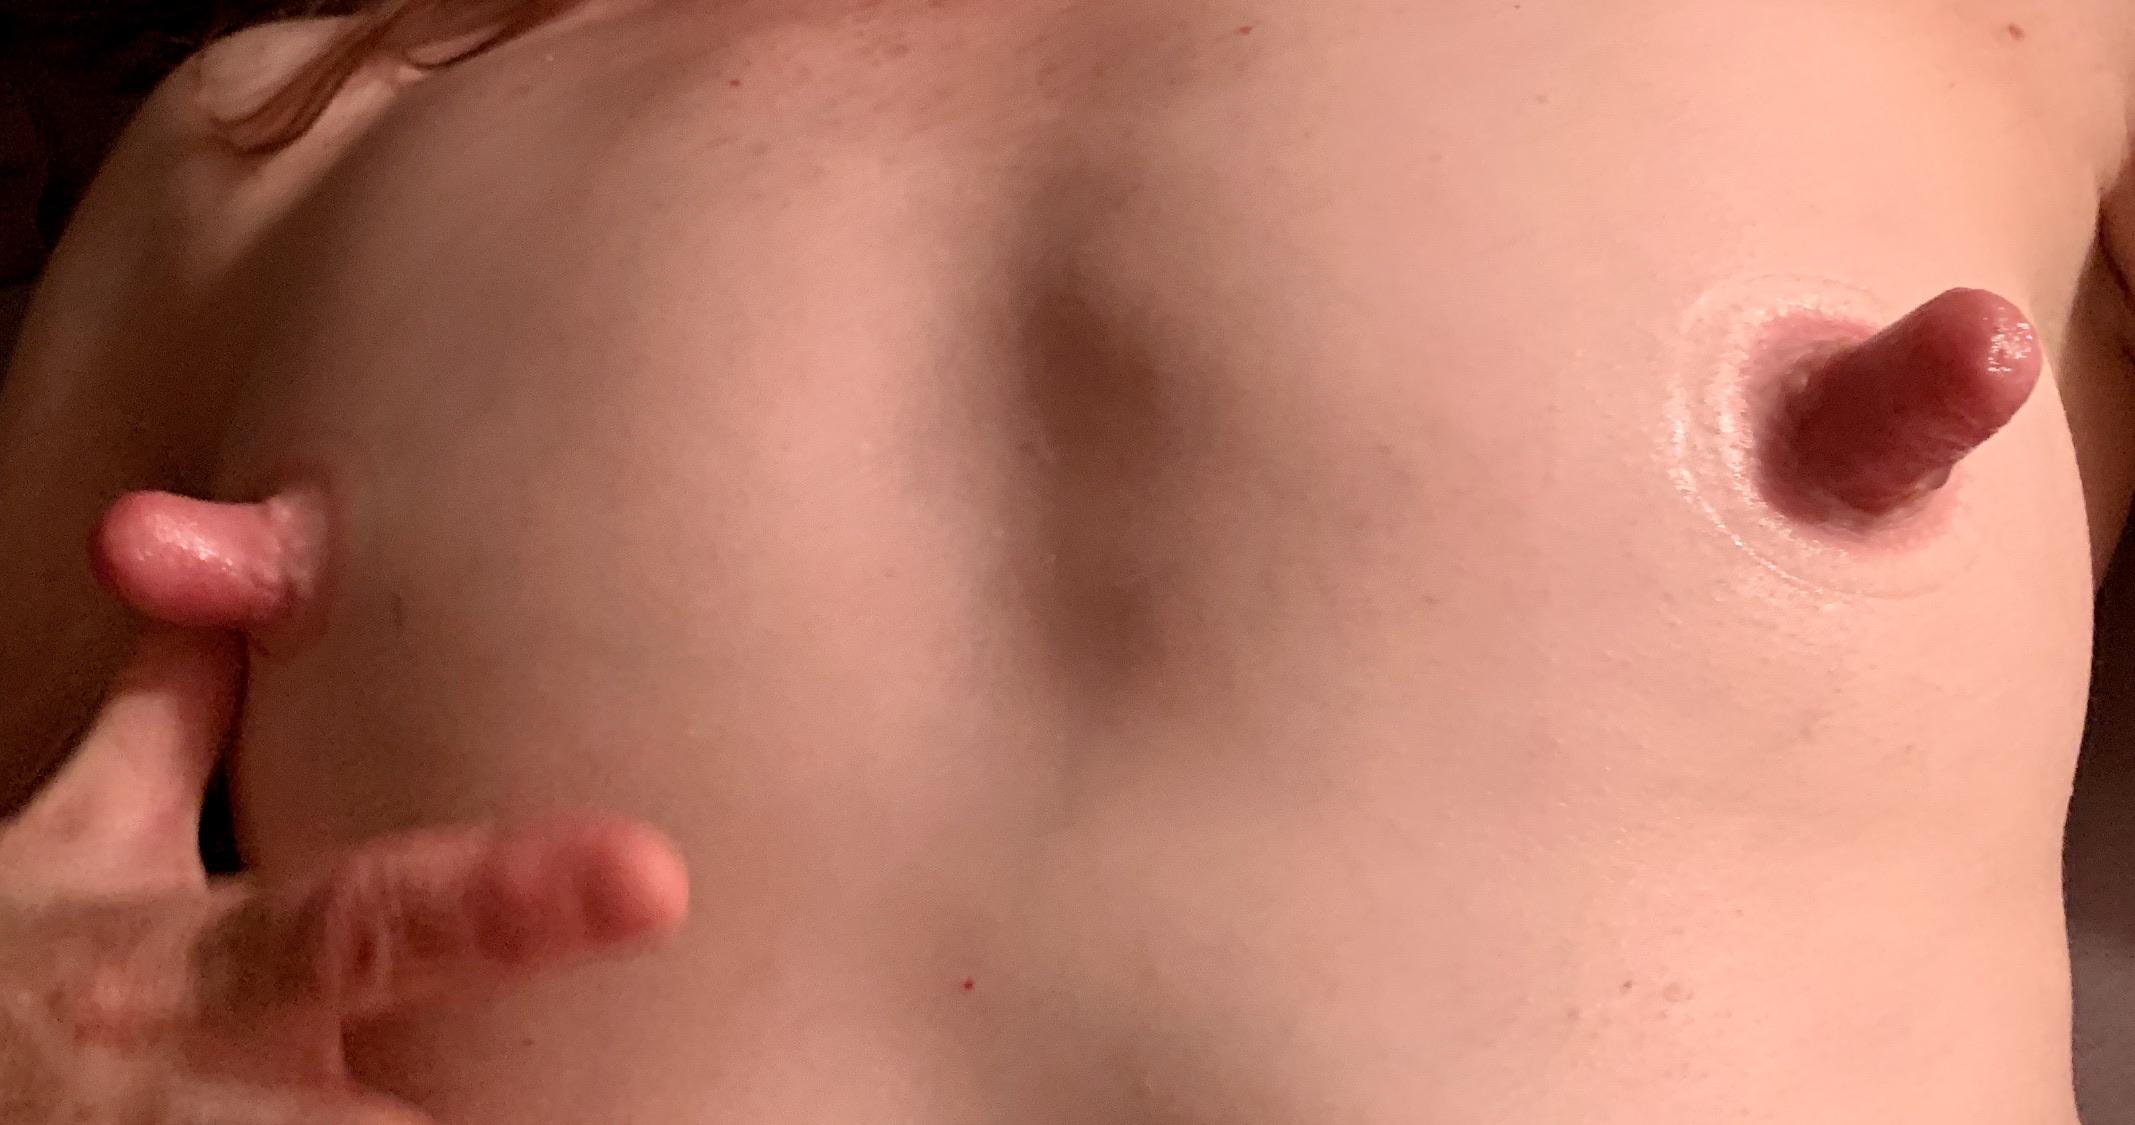 arsen pirijanyan add small tits huge nipples photo